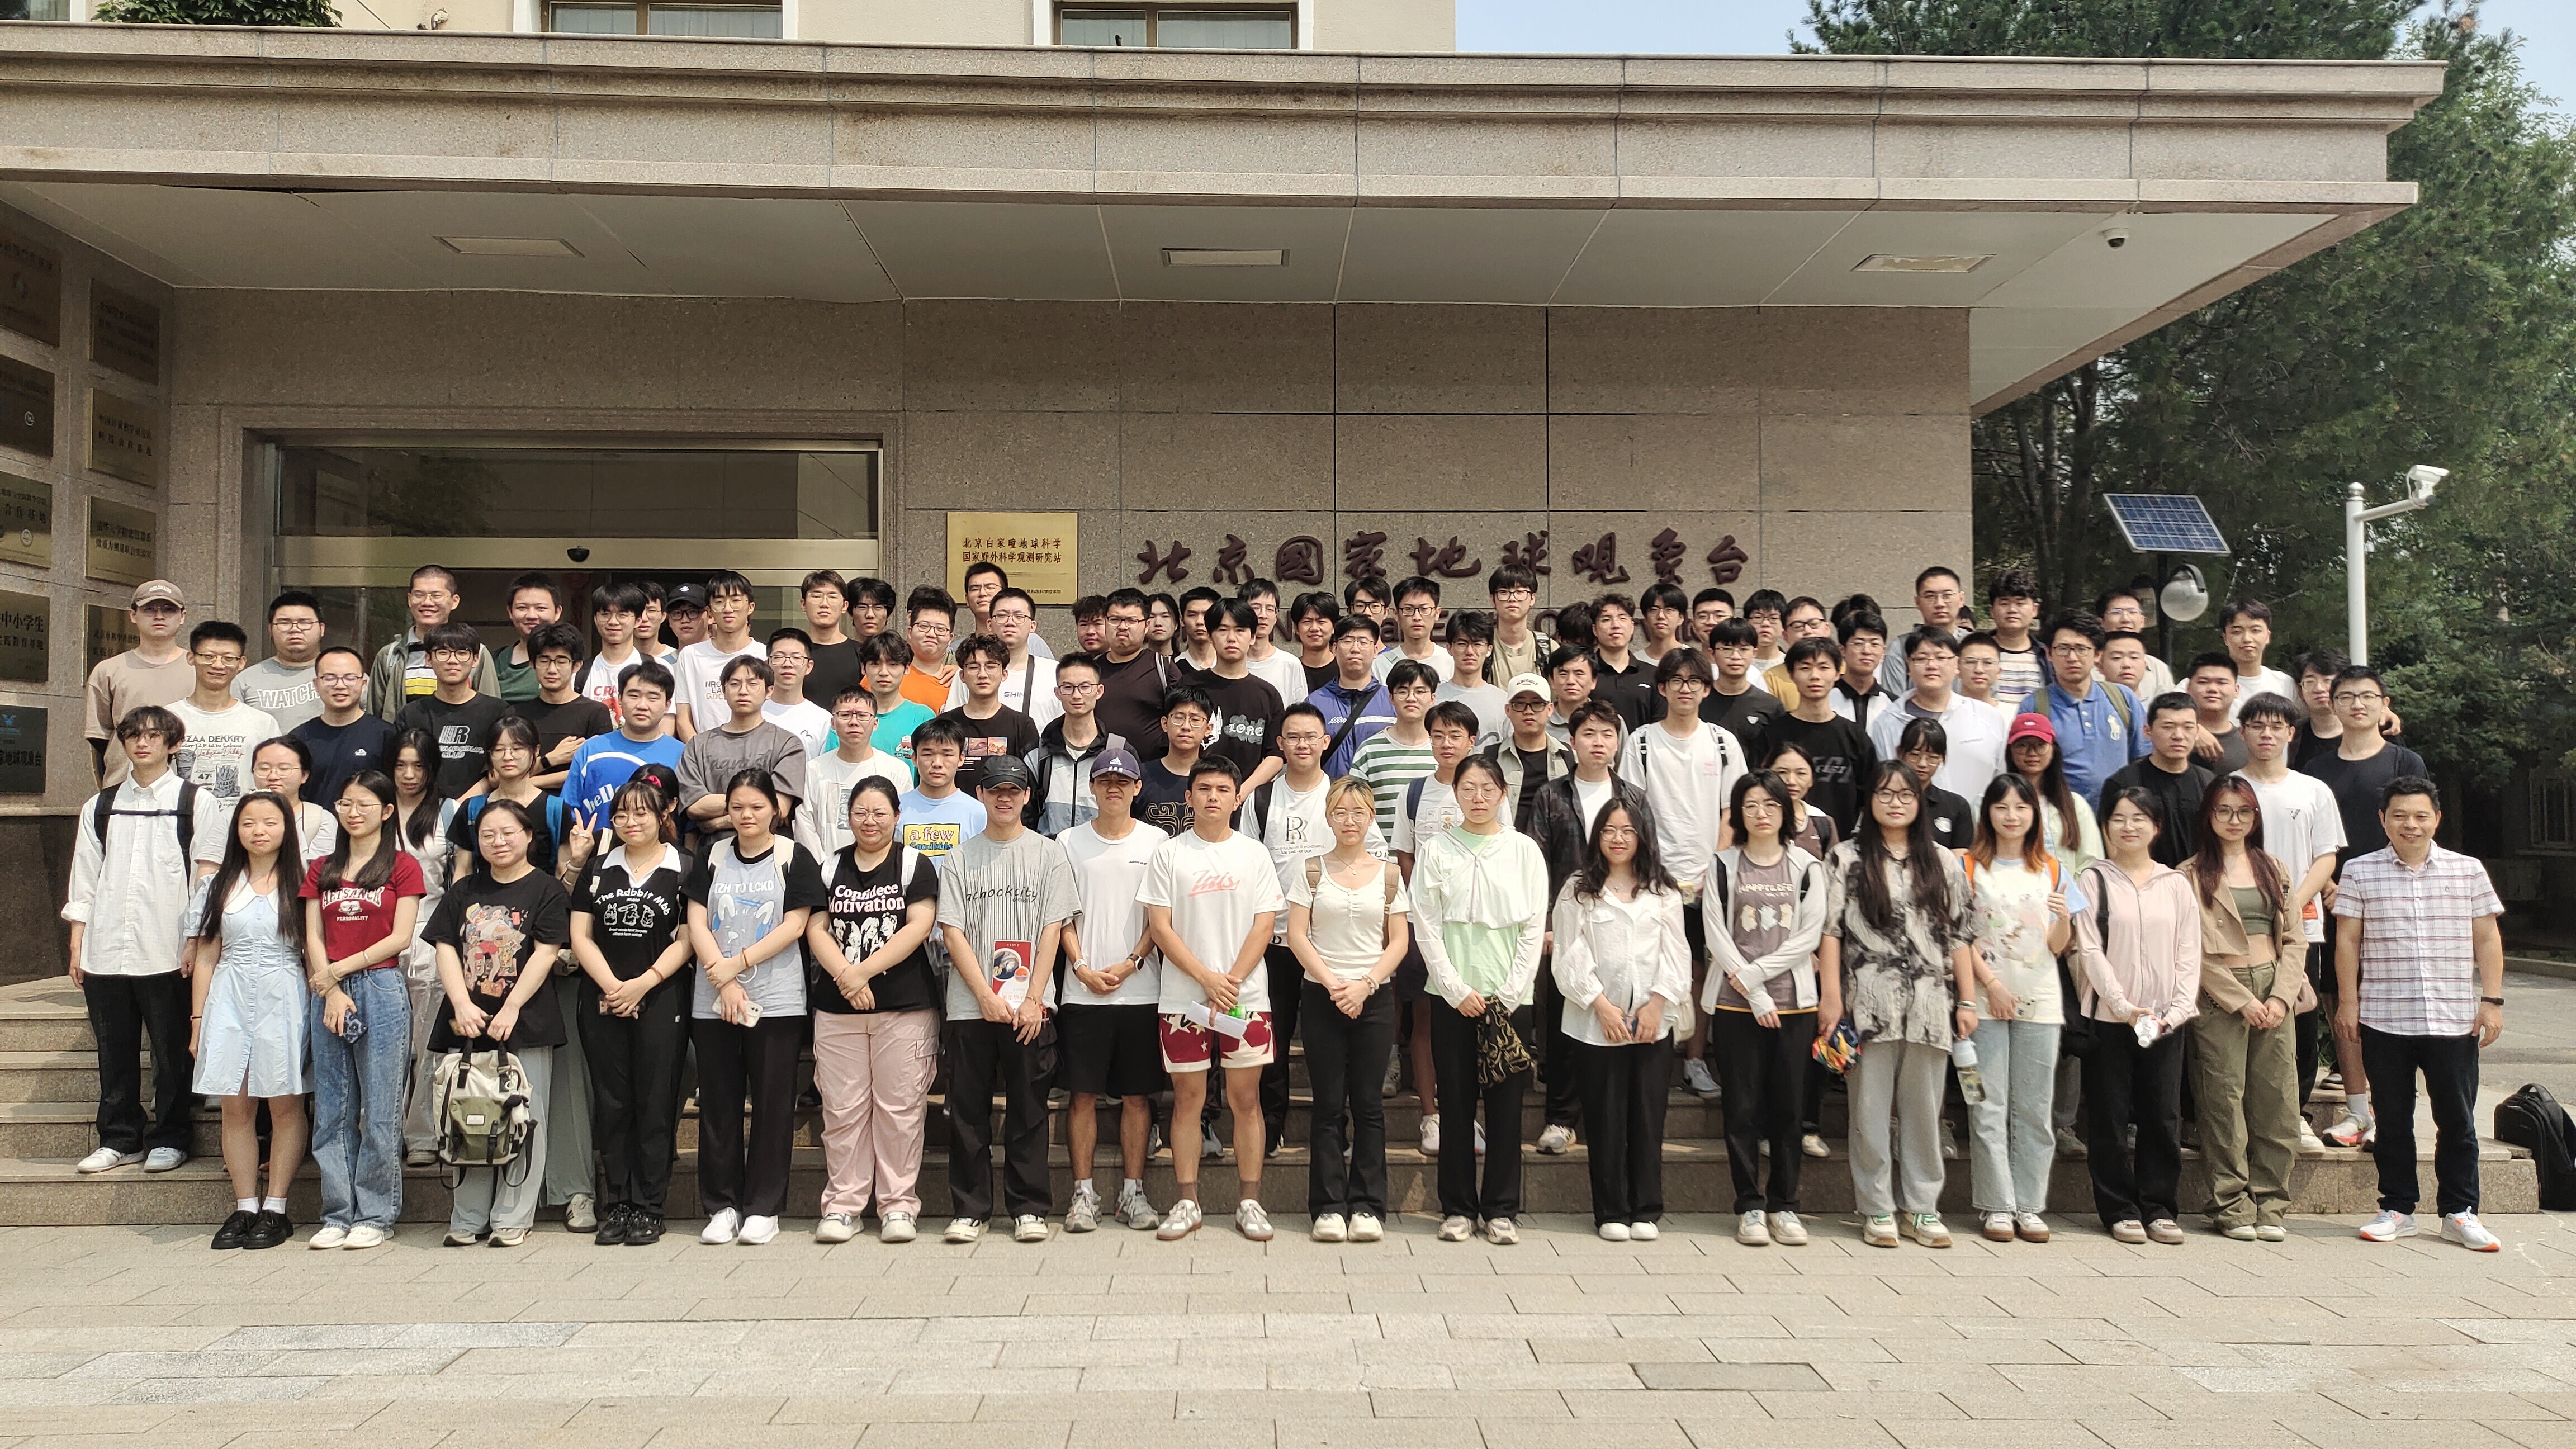 北京国家地球观象台面向高校开展大学生暑期实习活动